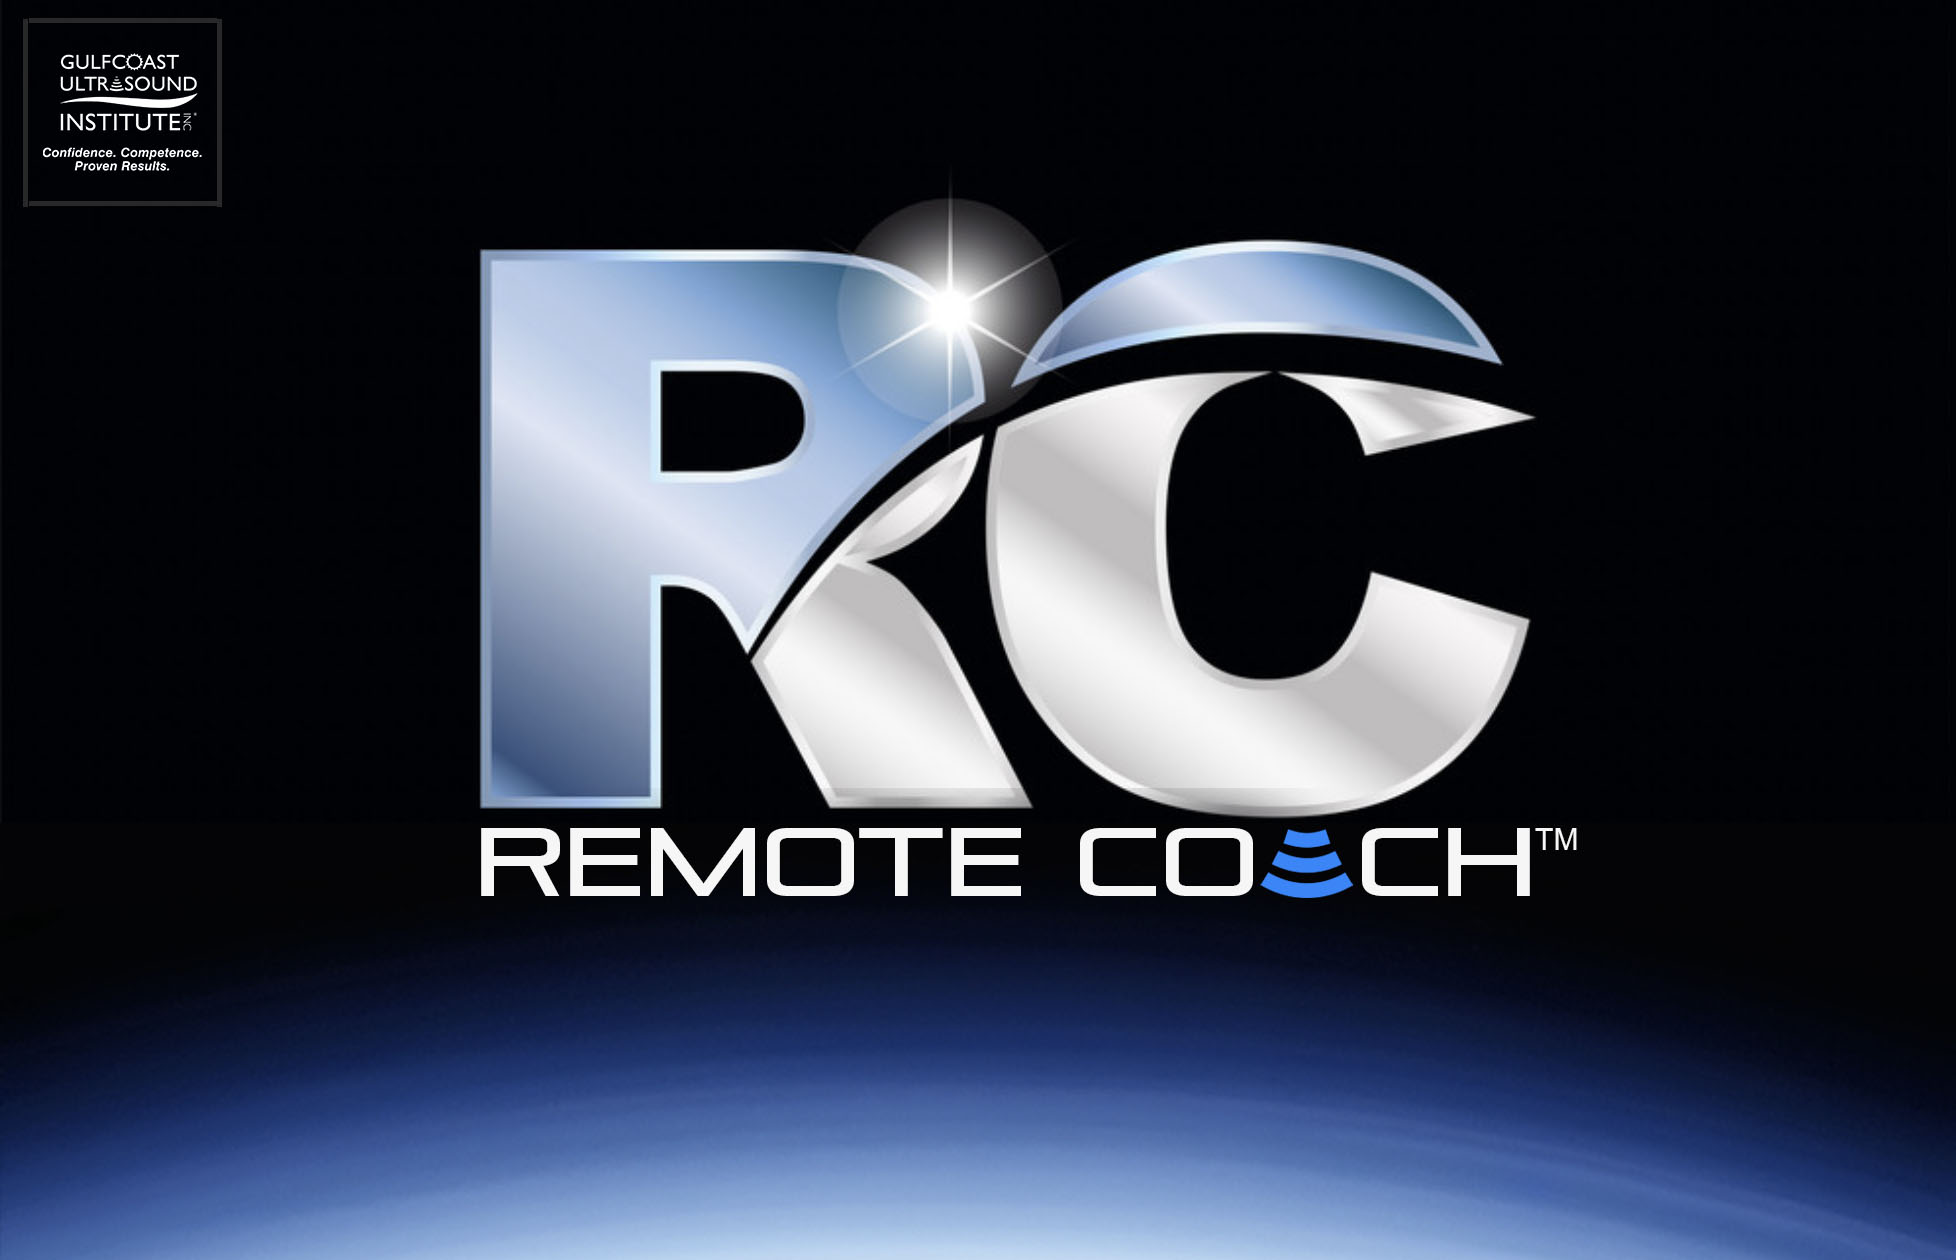 REMOTE COACH™ VIRTUAL SKILLS TRAINER